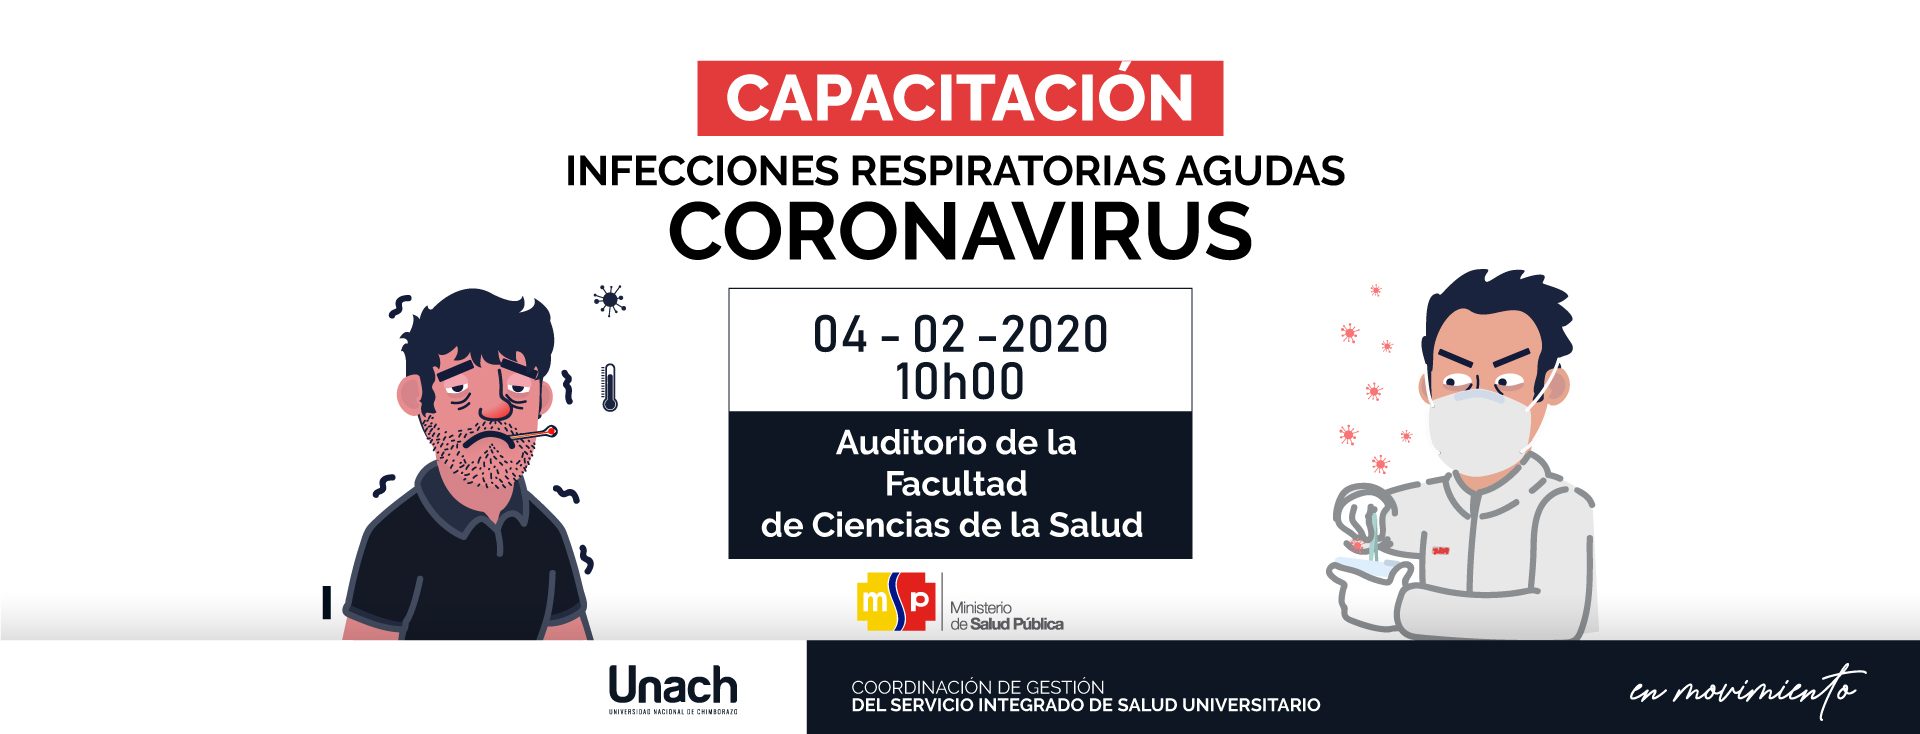 CAPACITACIÓN INFECCIONES RESPIRATORIAS AGUDAS "CORONAVIRUS"